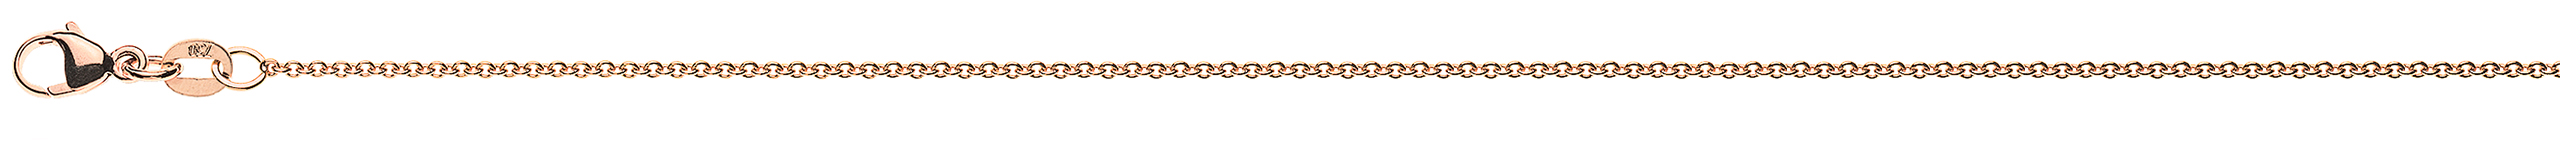 AURONOS Prestige Bracelet ancre rond or rose 18K 24cm 1.3mm